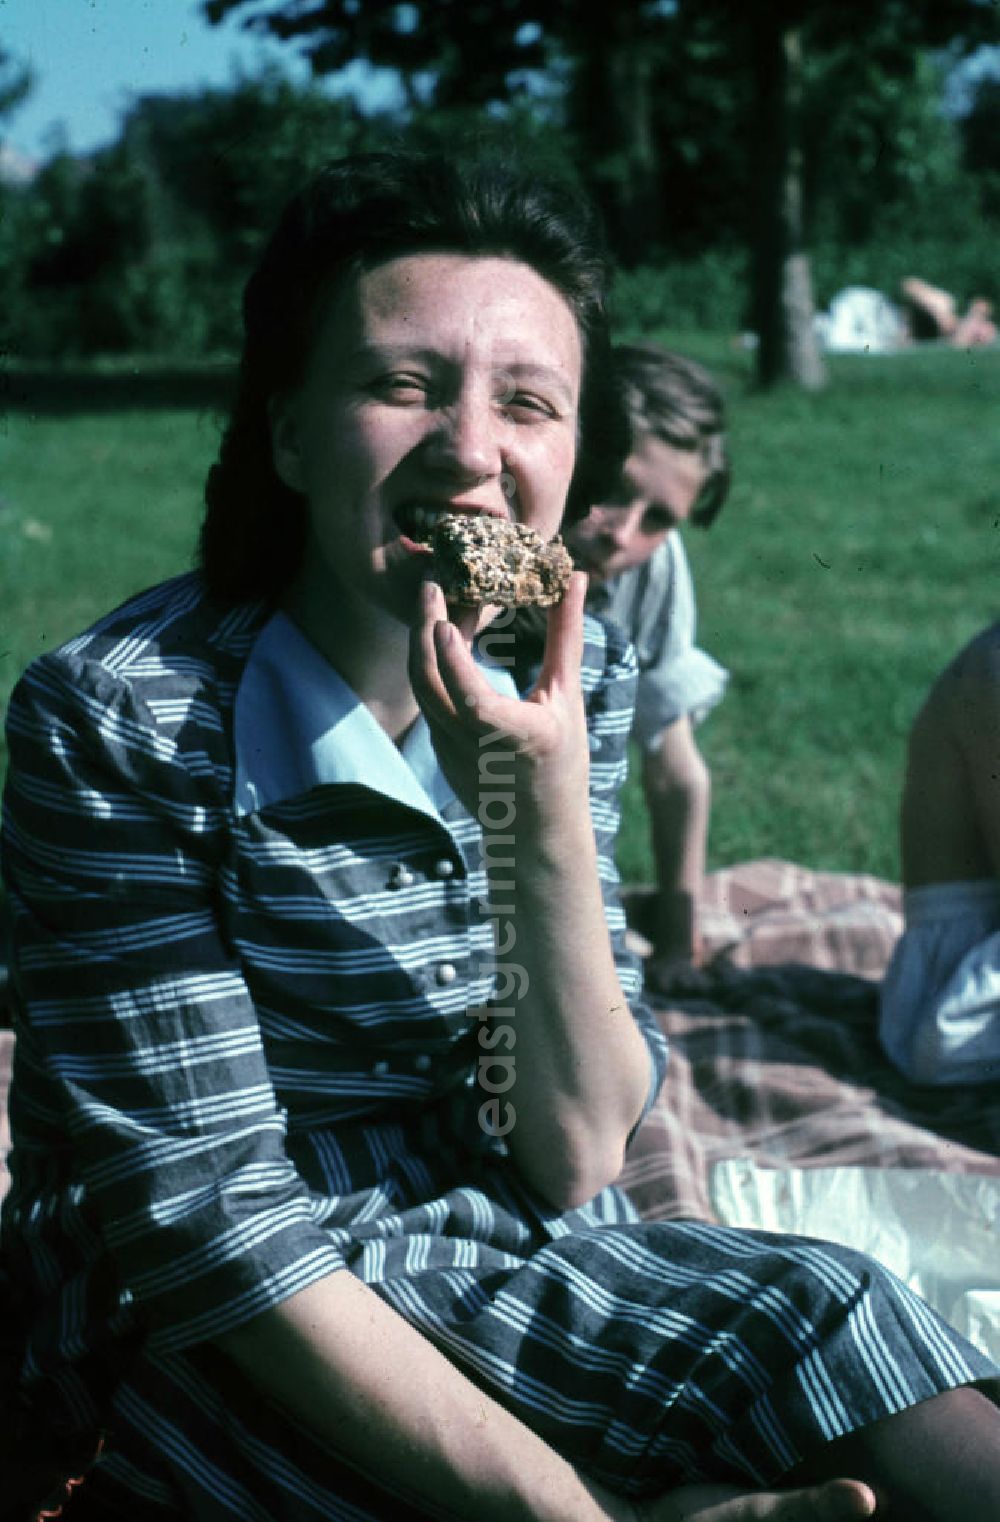 GDR image archive: Leuna - Lecker, Kuchen essen im Freibad. Tasty, eat cake in the open-air bath.